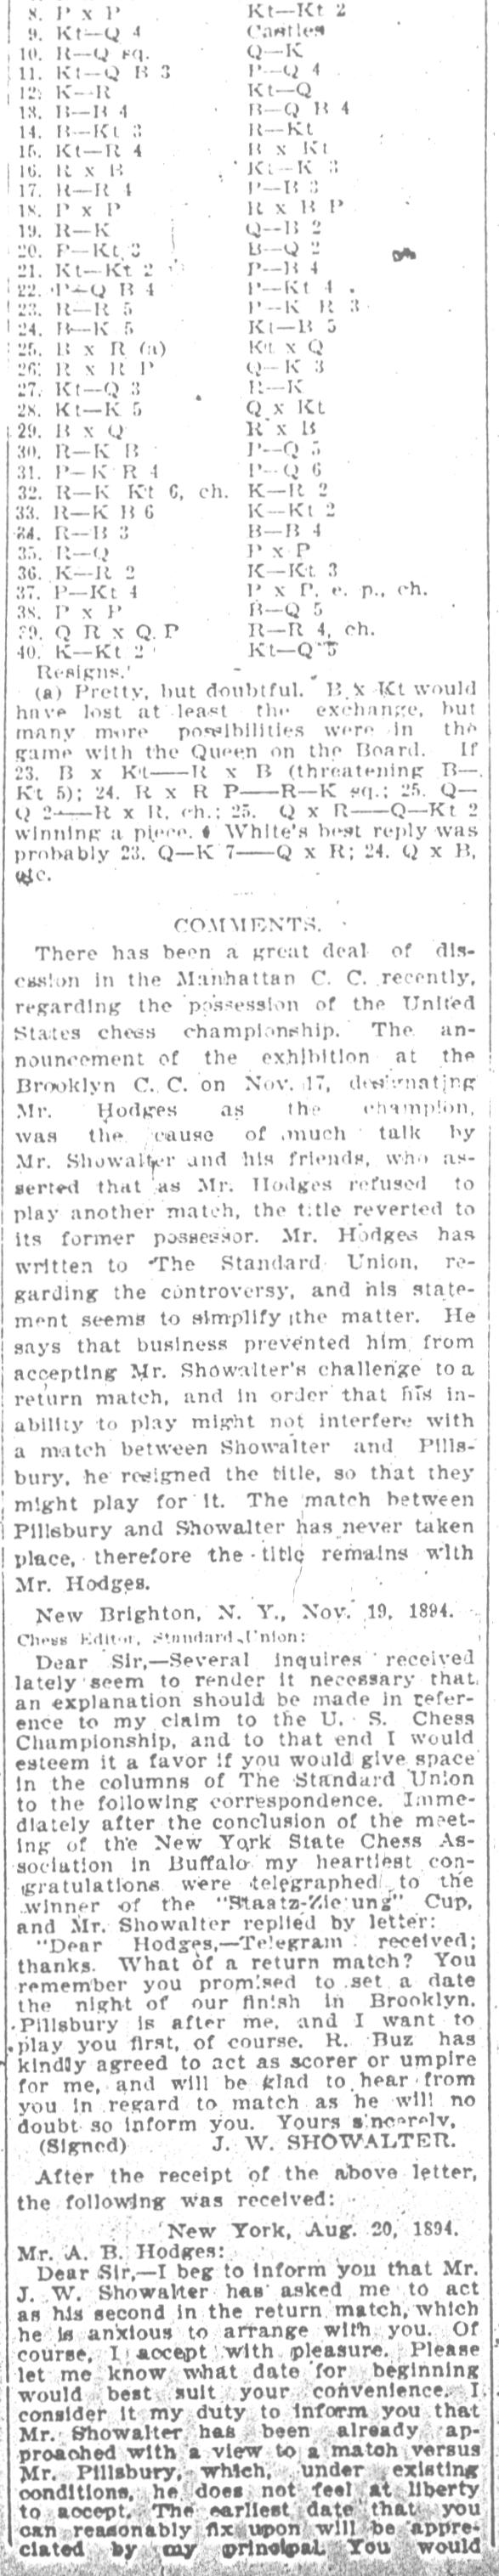 1894.11.26-02 Brooklyn Daily Standard-Union.jpg